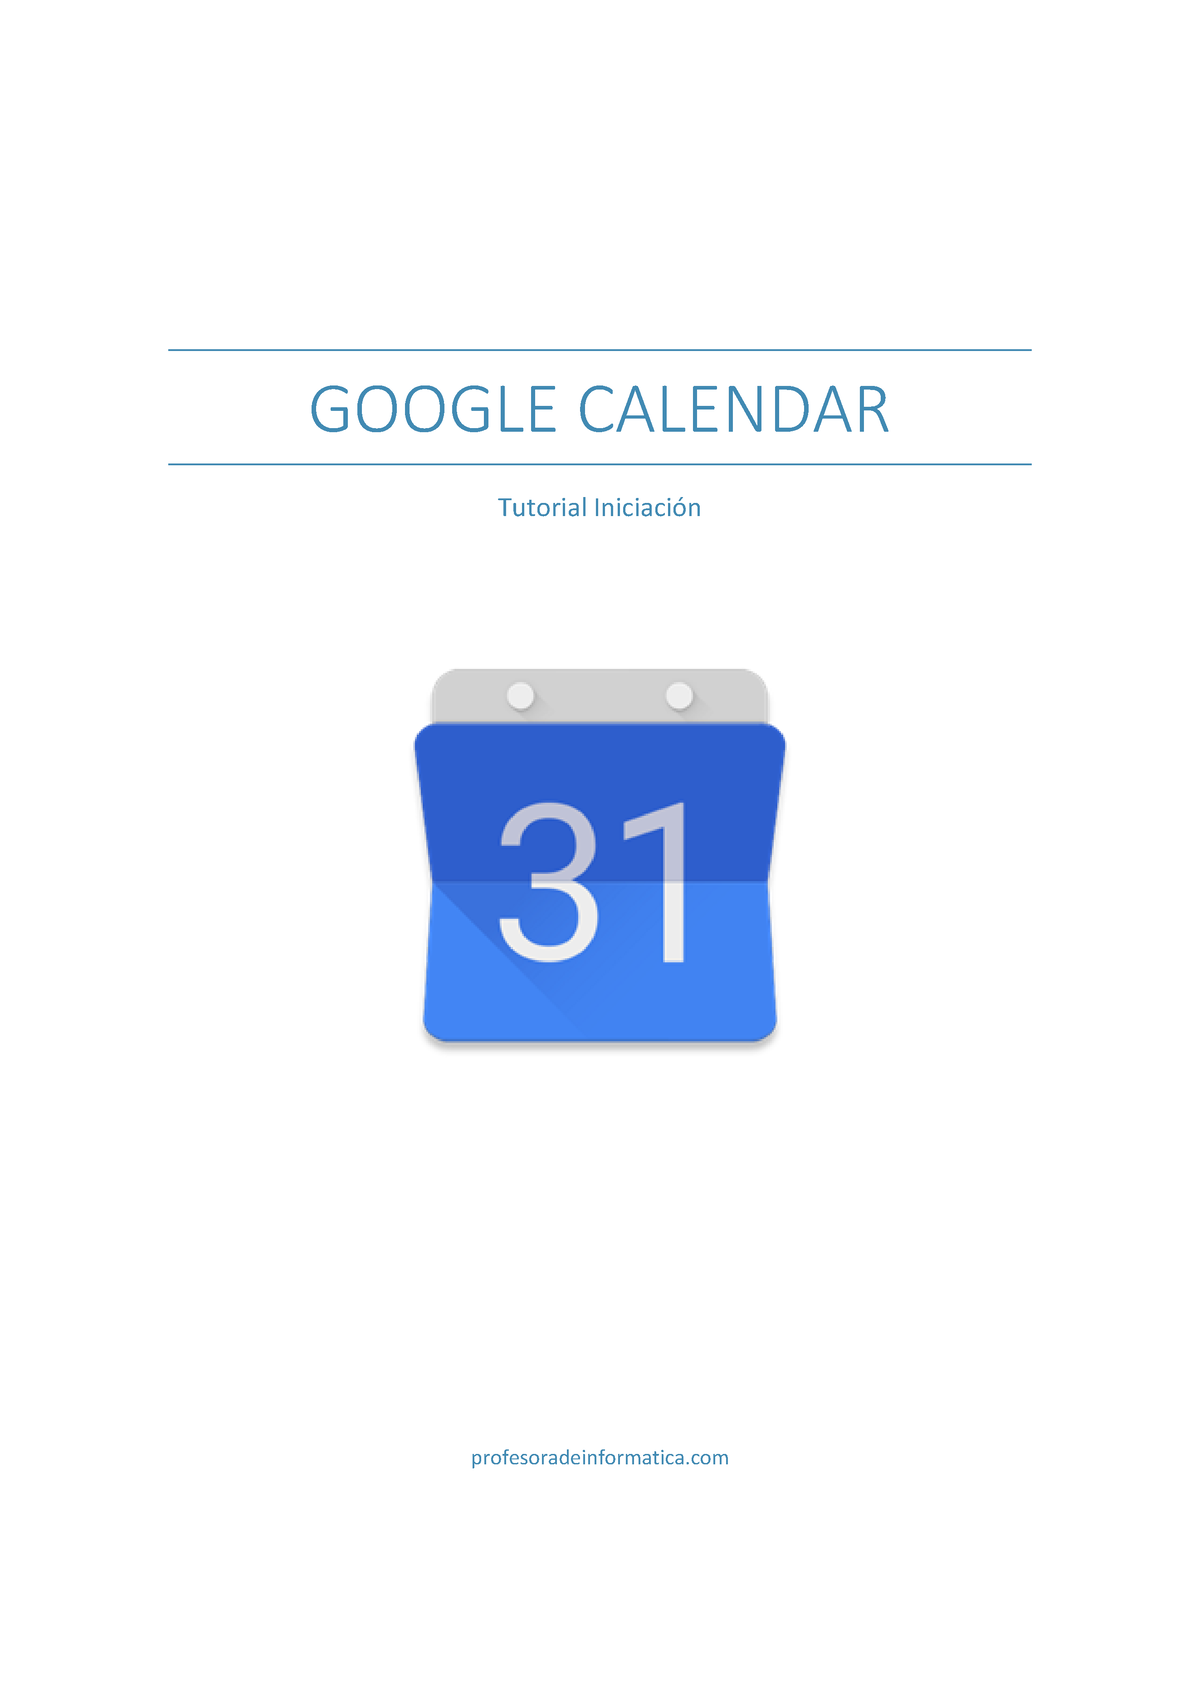 Google Calendar Manual GOOGLE CALENDAR Tutorial Iniciación Contenido